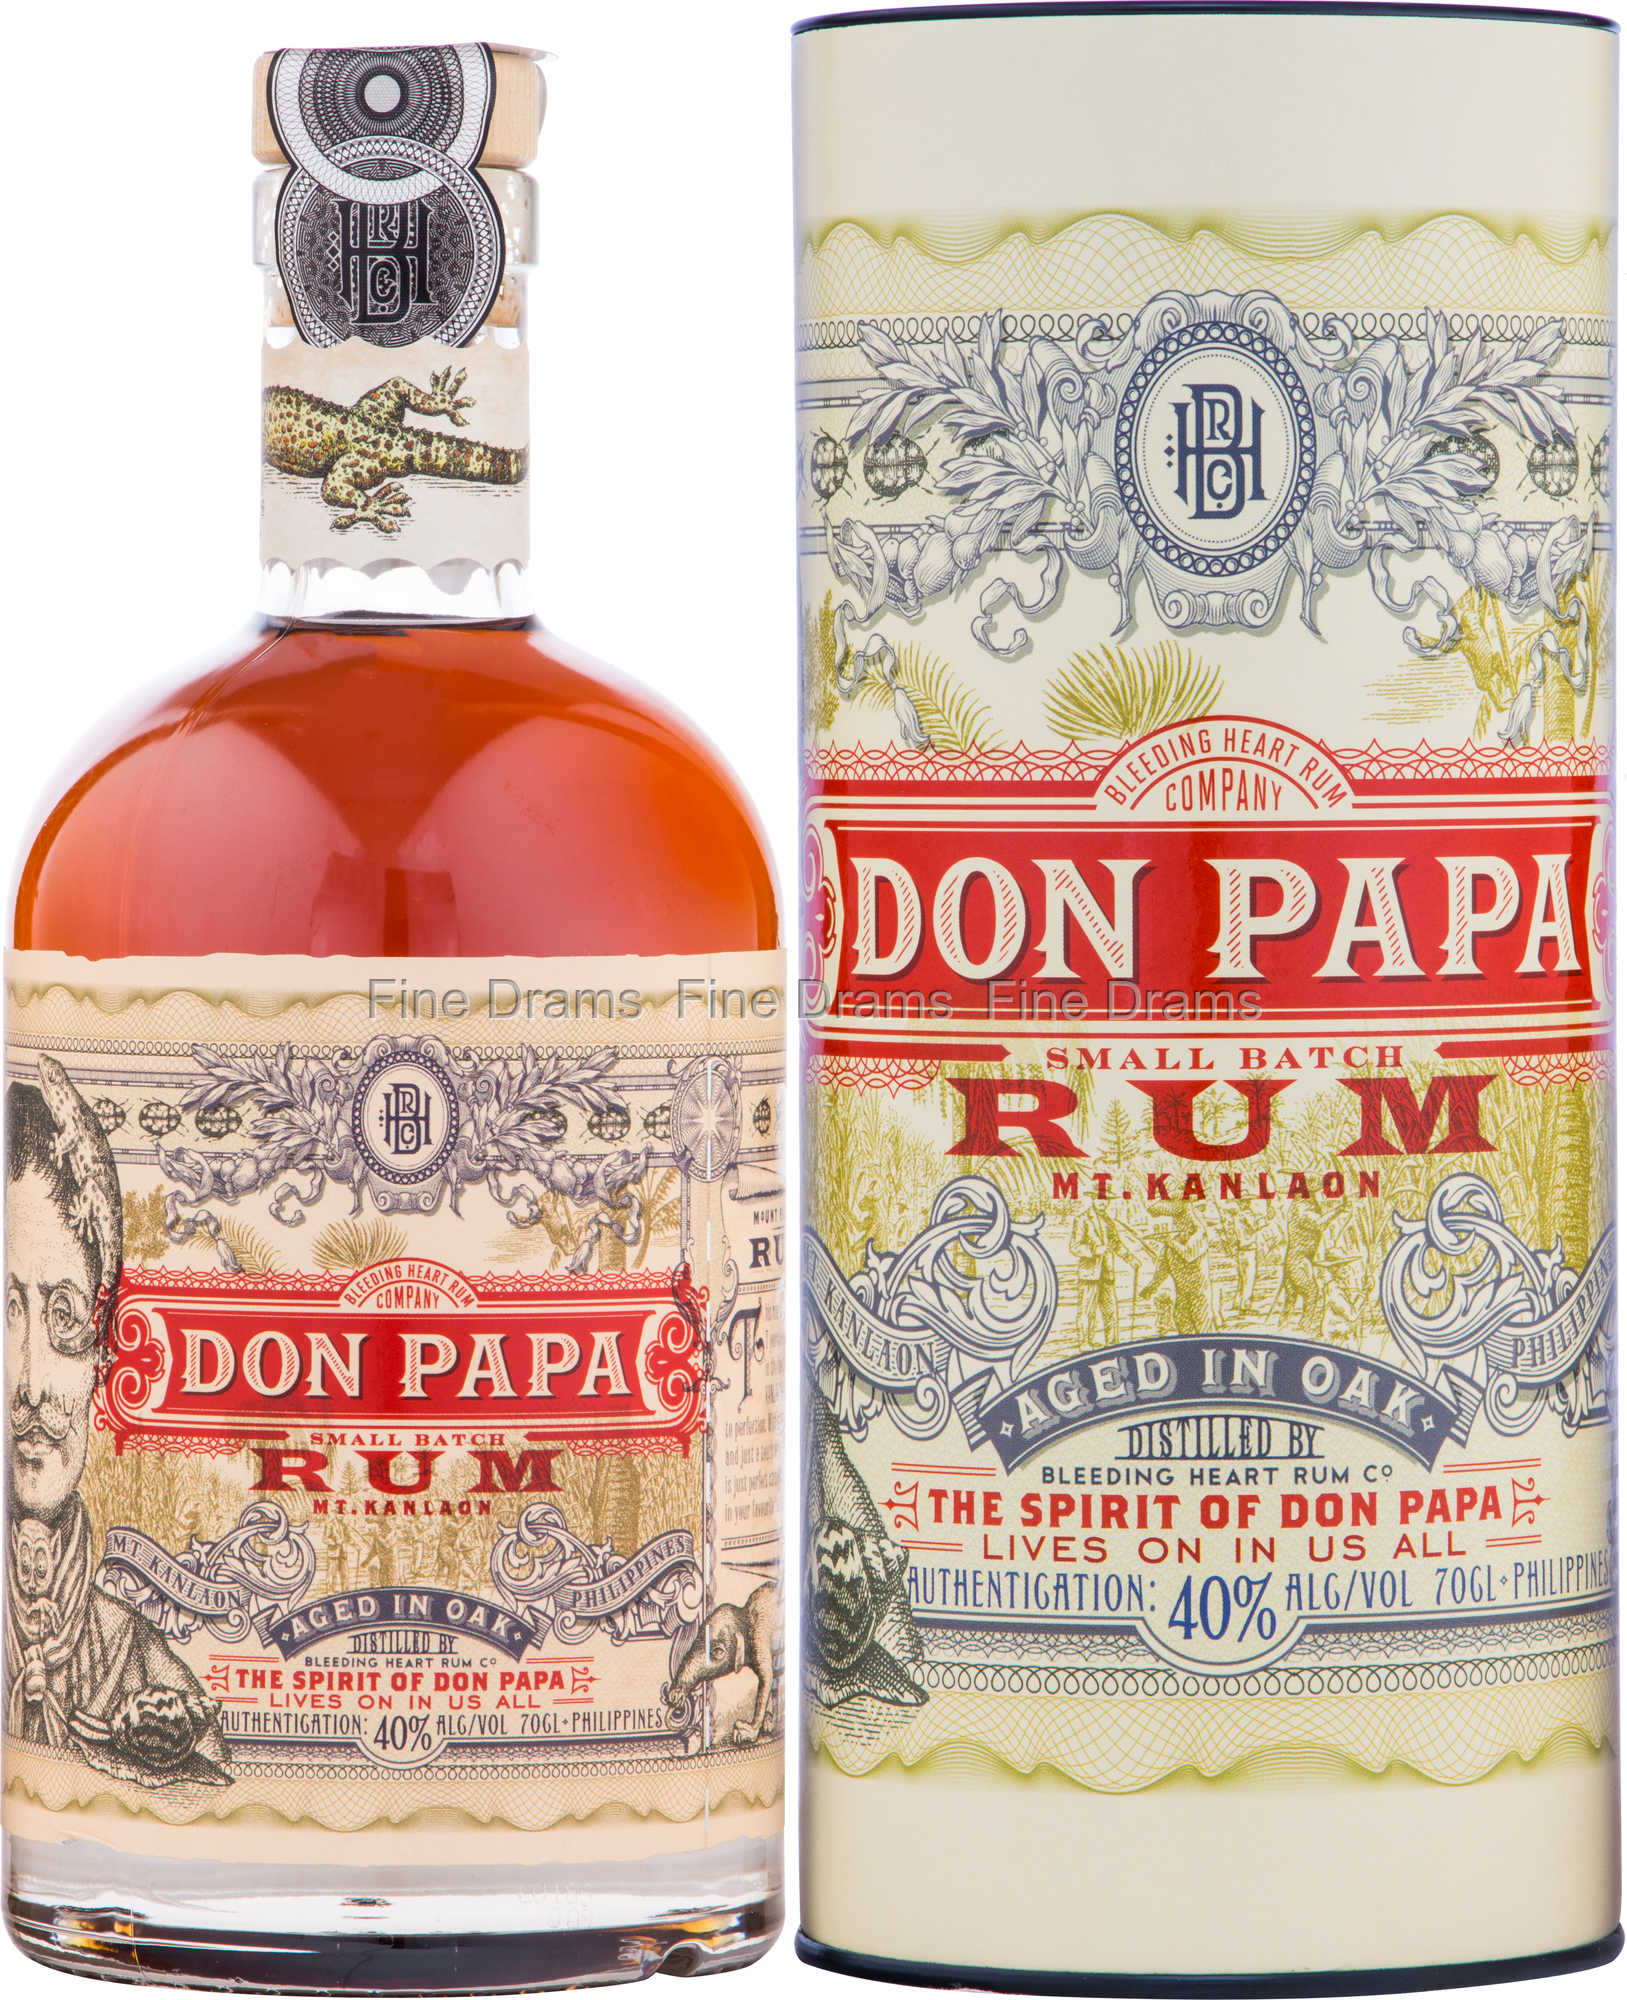 Don Papa Philippine Rum